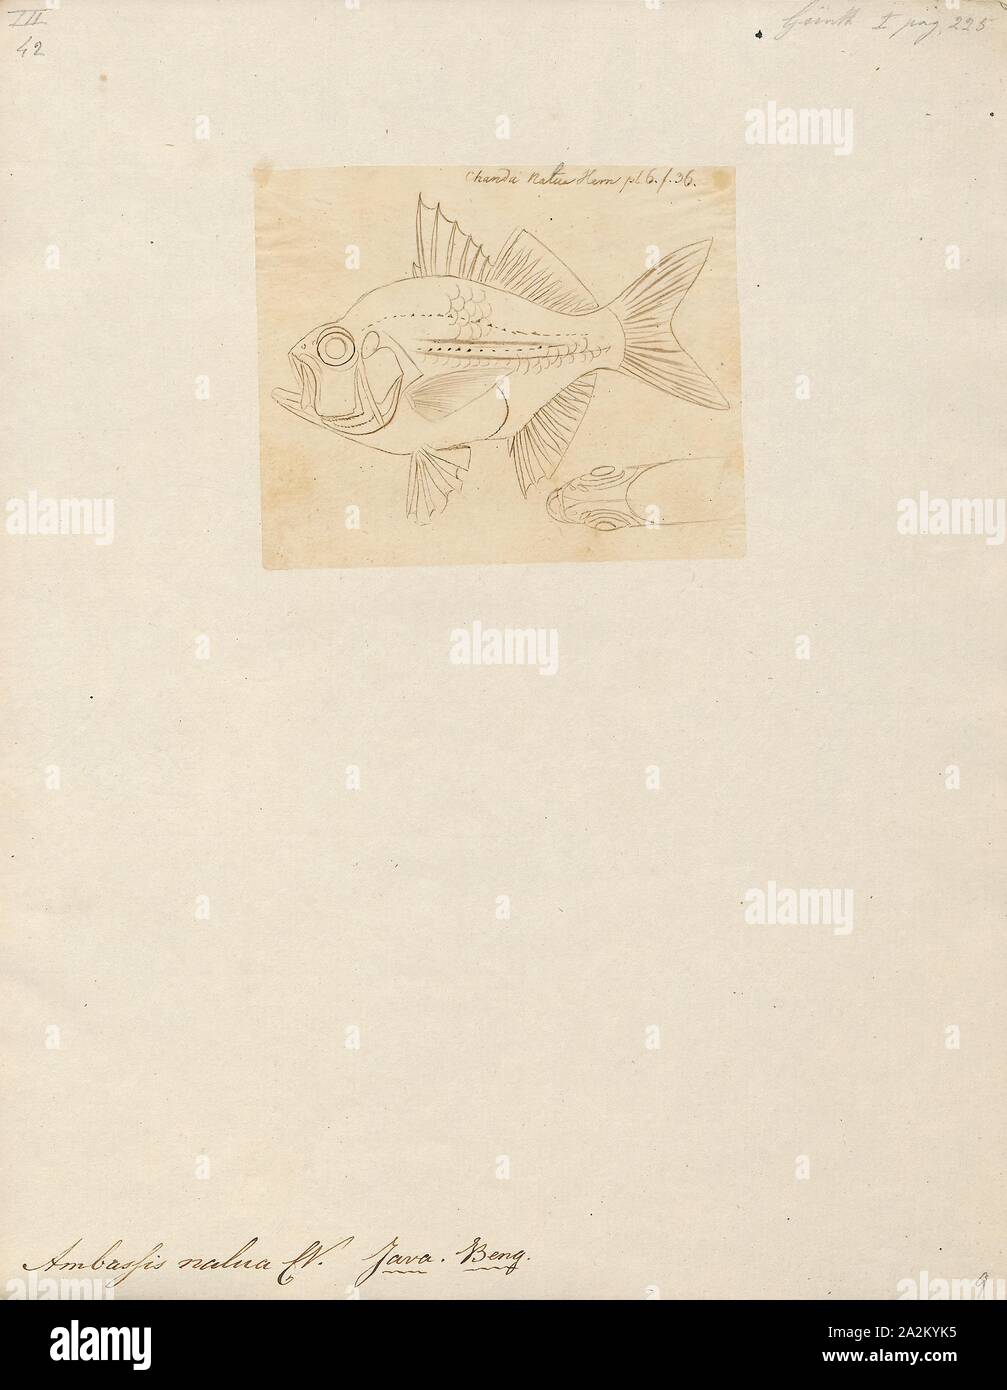 Ambassis nalua, Drucken, Ambassis nalua, die Scalloped glassfish oder überbackene perchlet, ist eine Fischart aus der Gattung Ambassis. Es native auf den indopazifischen Region ist, Indien, Australien und Neuguinea, wo es in Buchten, Flussmündungen und Mangroven gesäumten Bäche auftritt., 1807-1822 Stockfoto